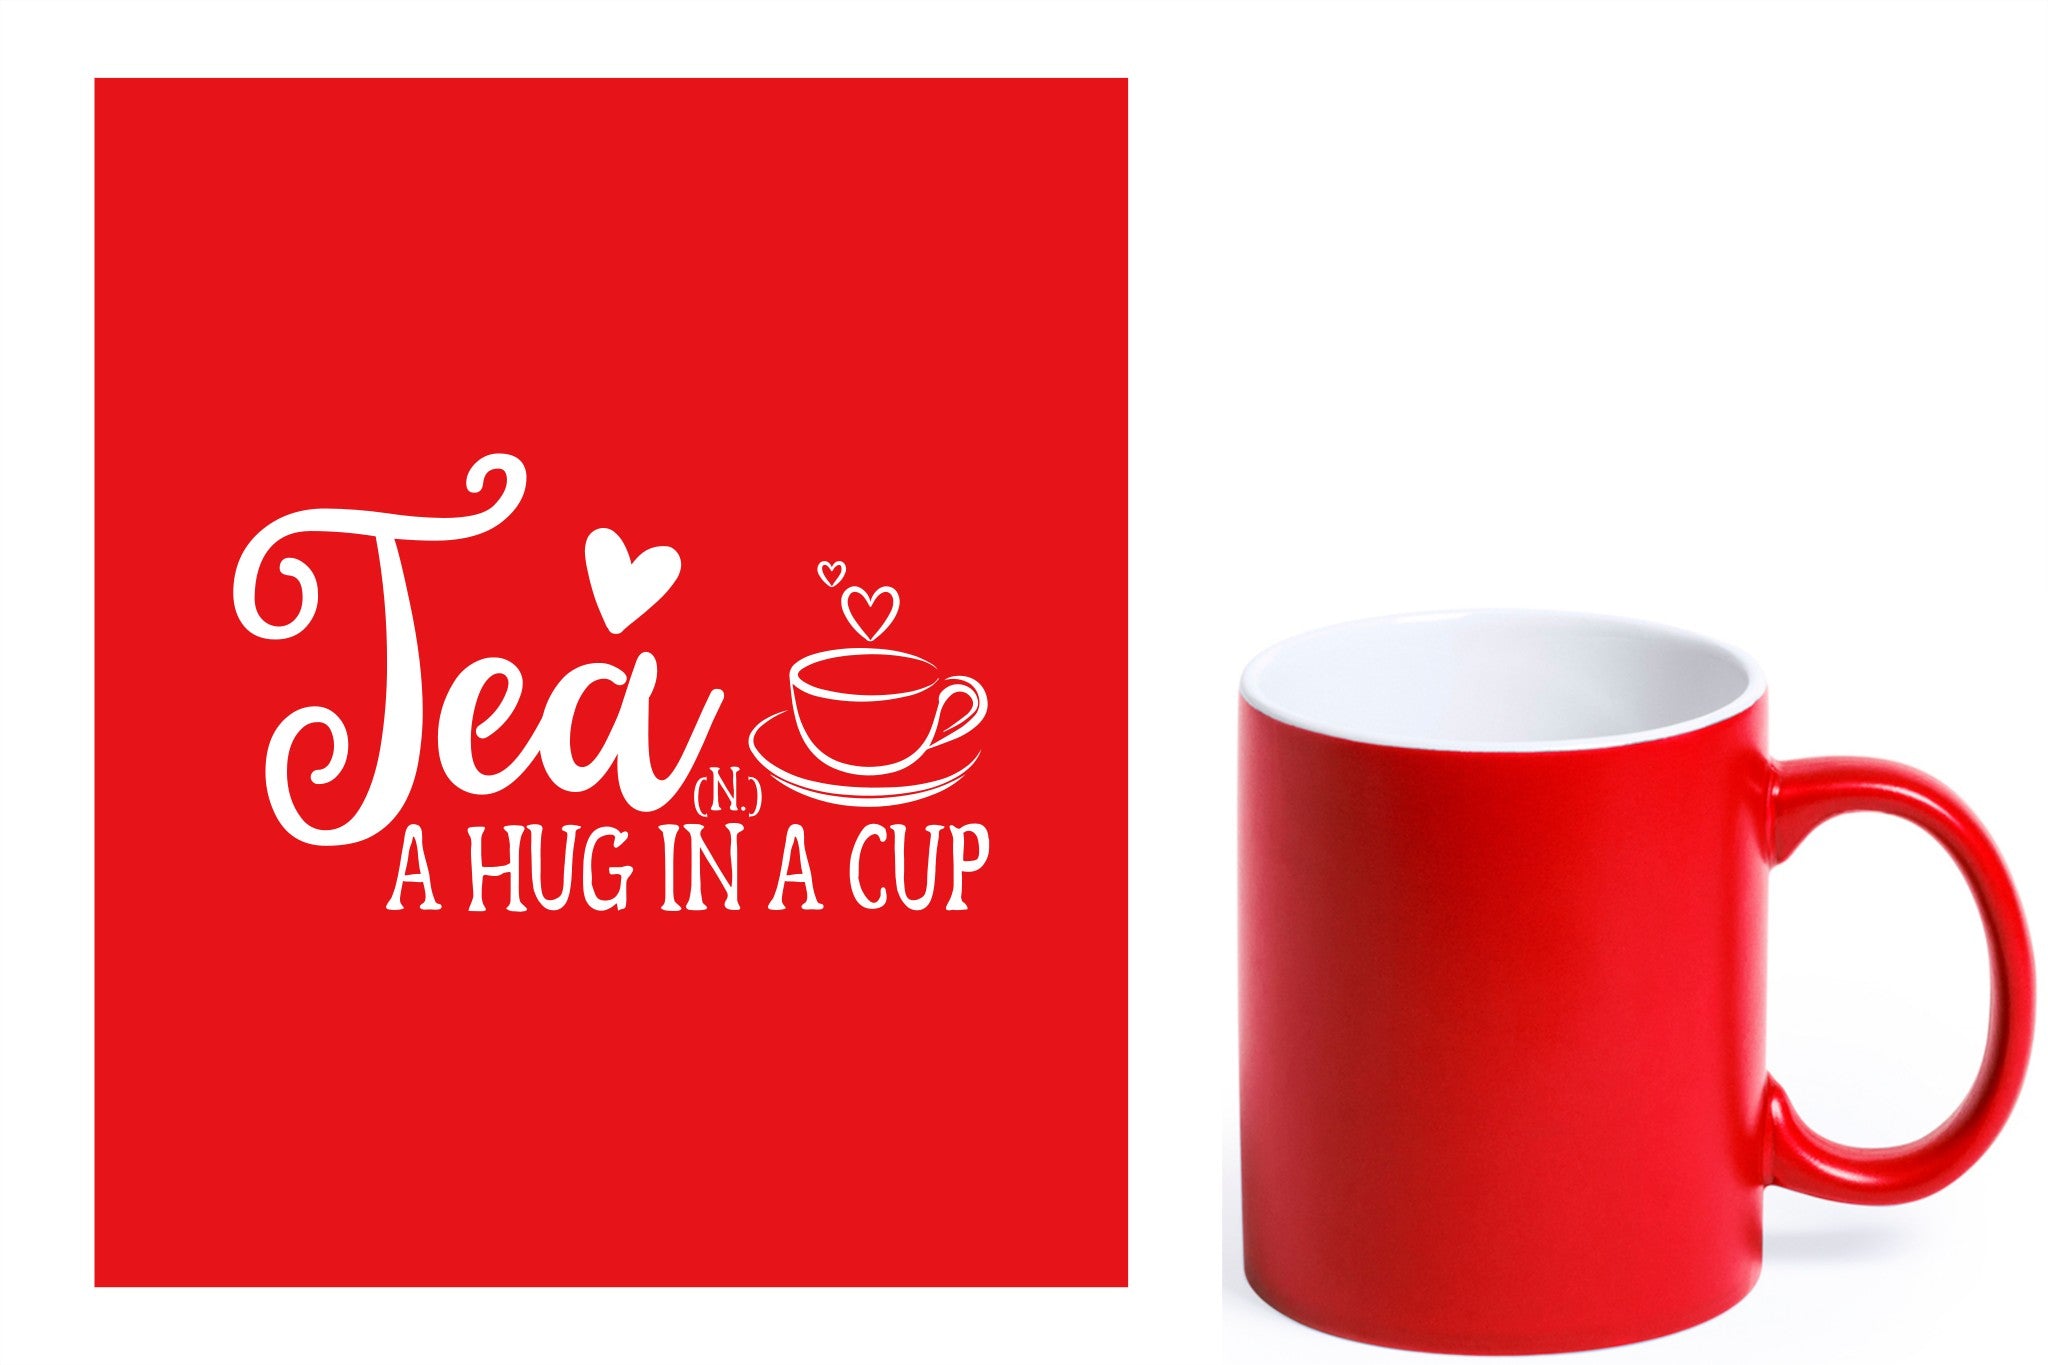 rode keramische mok met witte gravure  'Tea and a hug in a cup'.